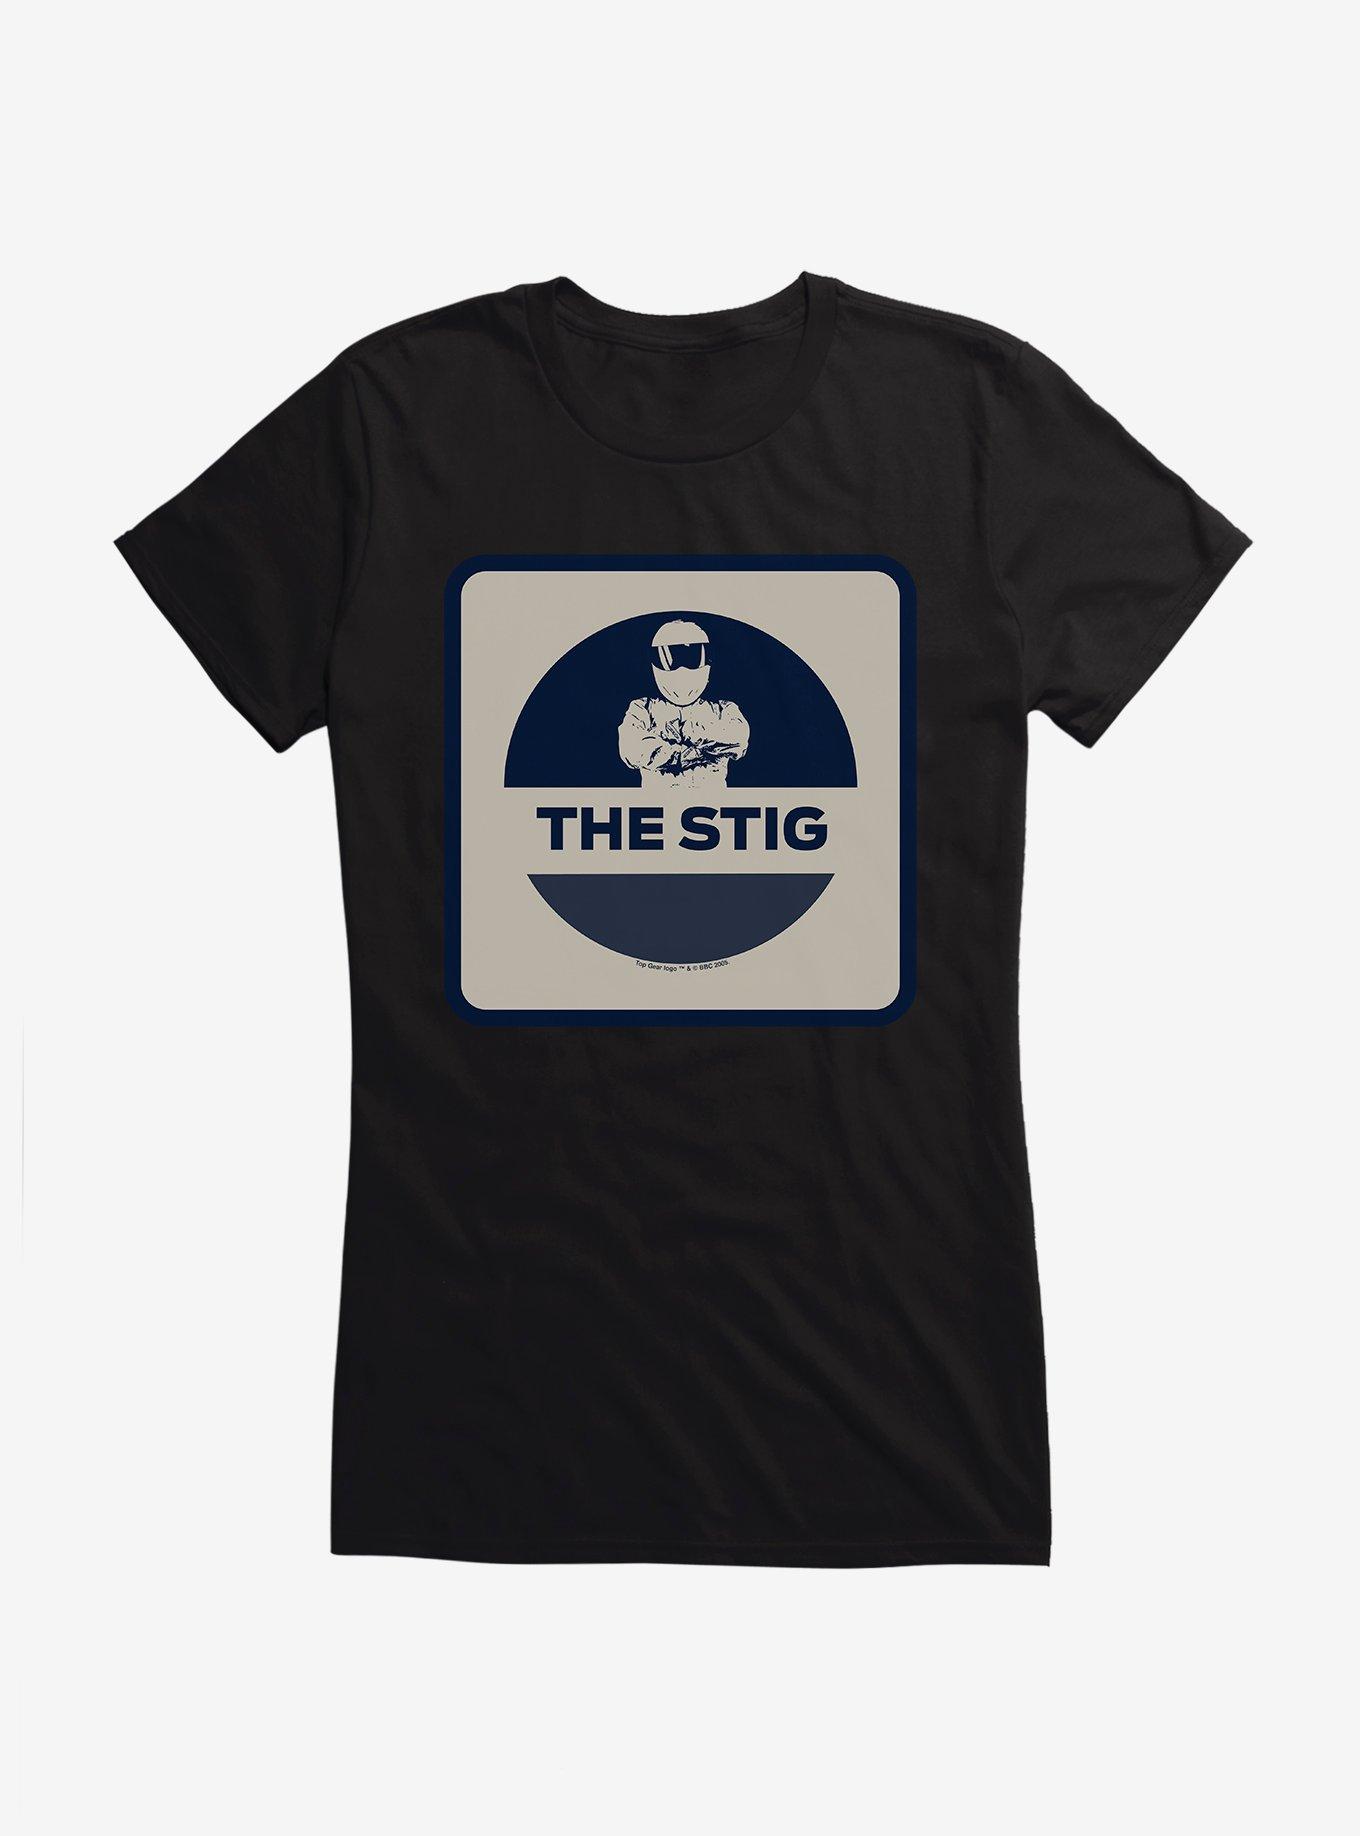 Top Gear The Stig Stance Girls T-Shirt